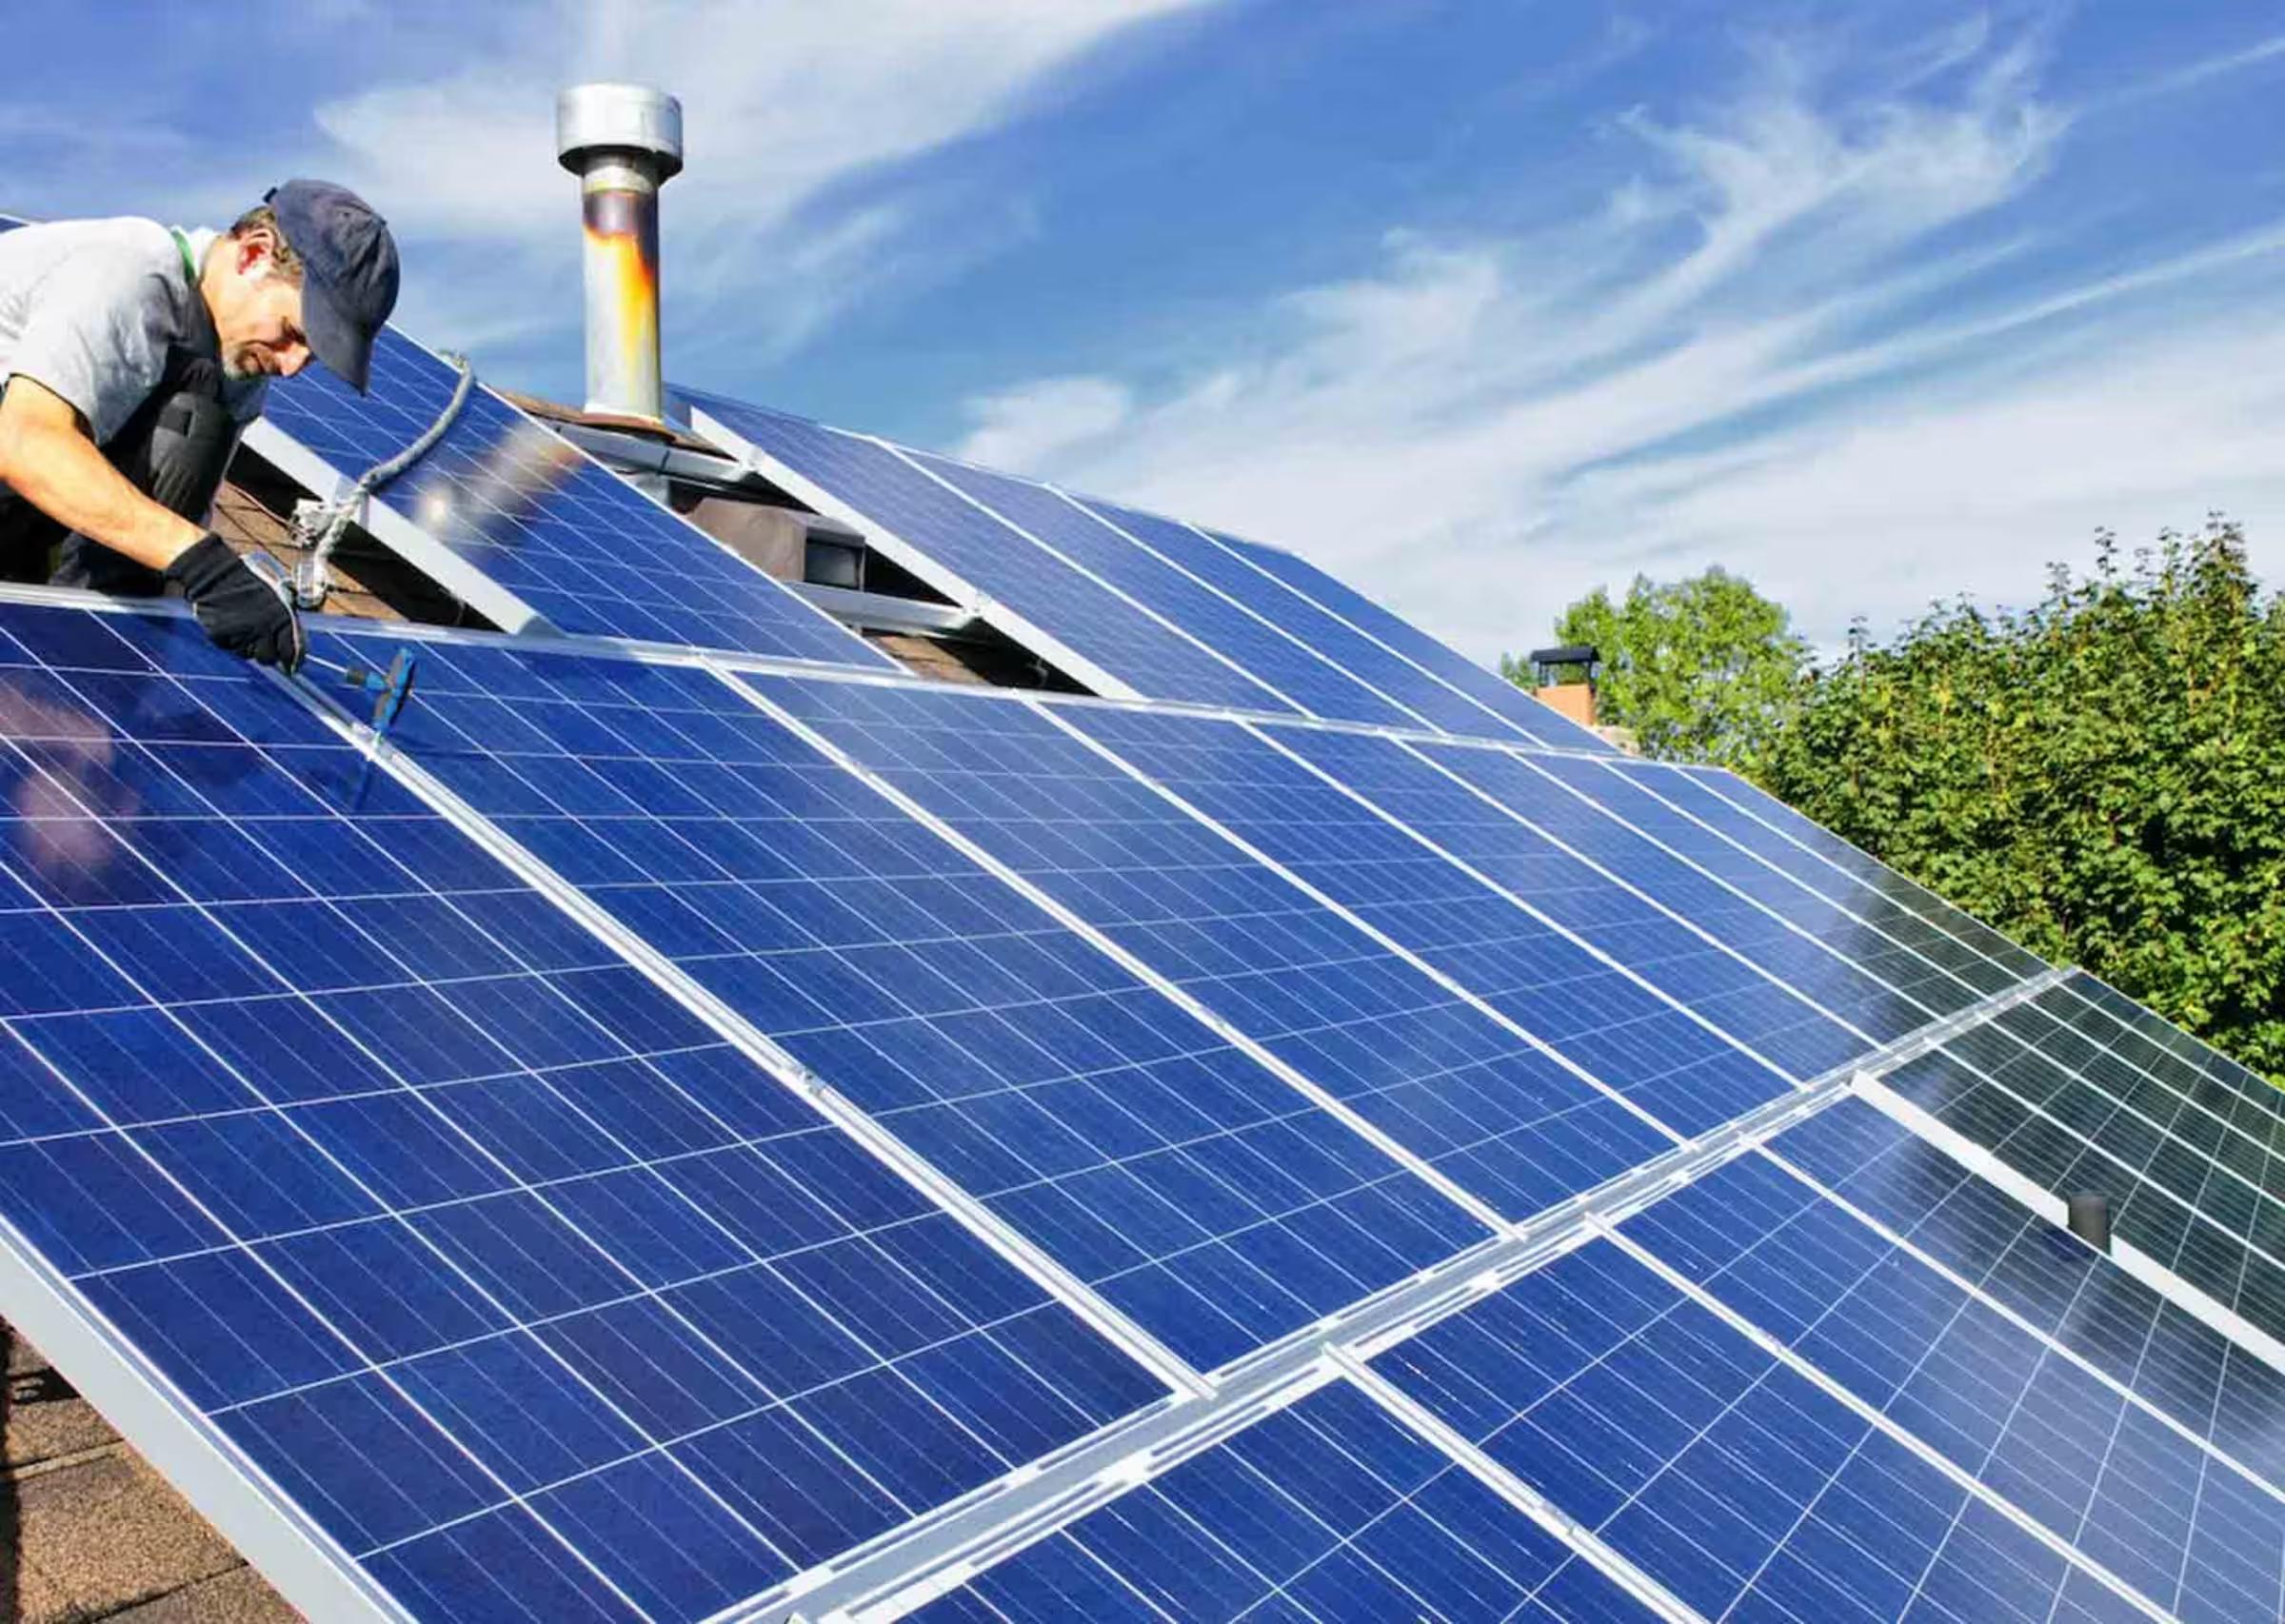 Installazione degli impianti fotovoltaici: Procedure e misure di sicurezza